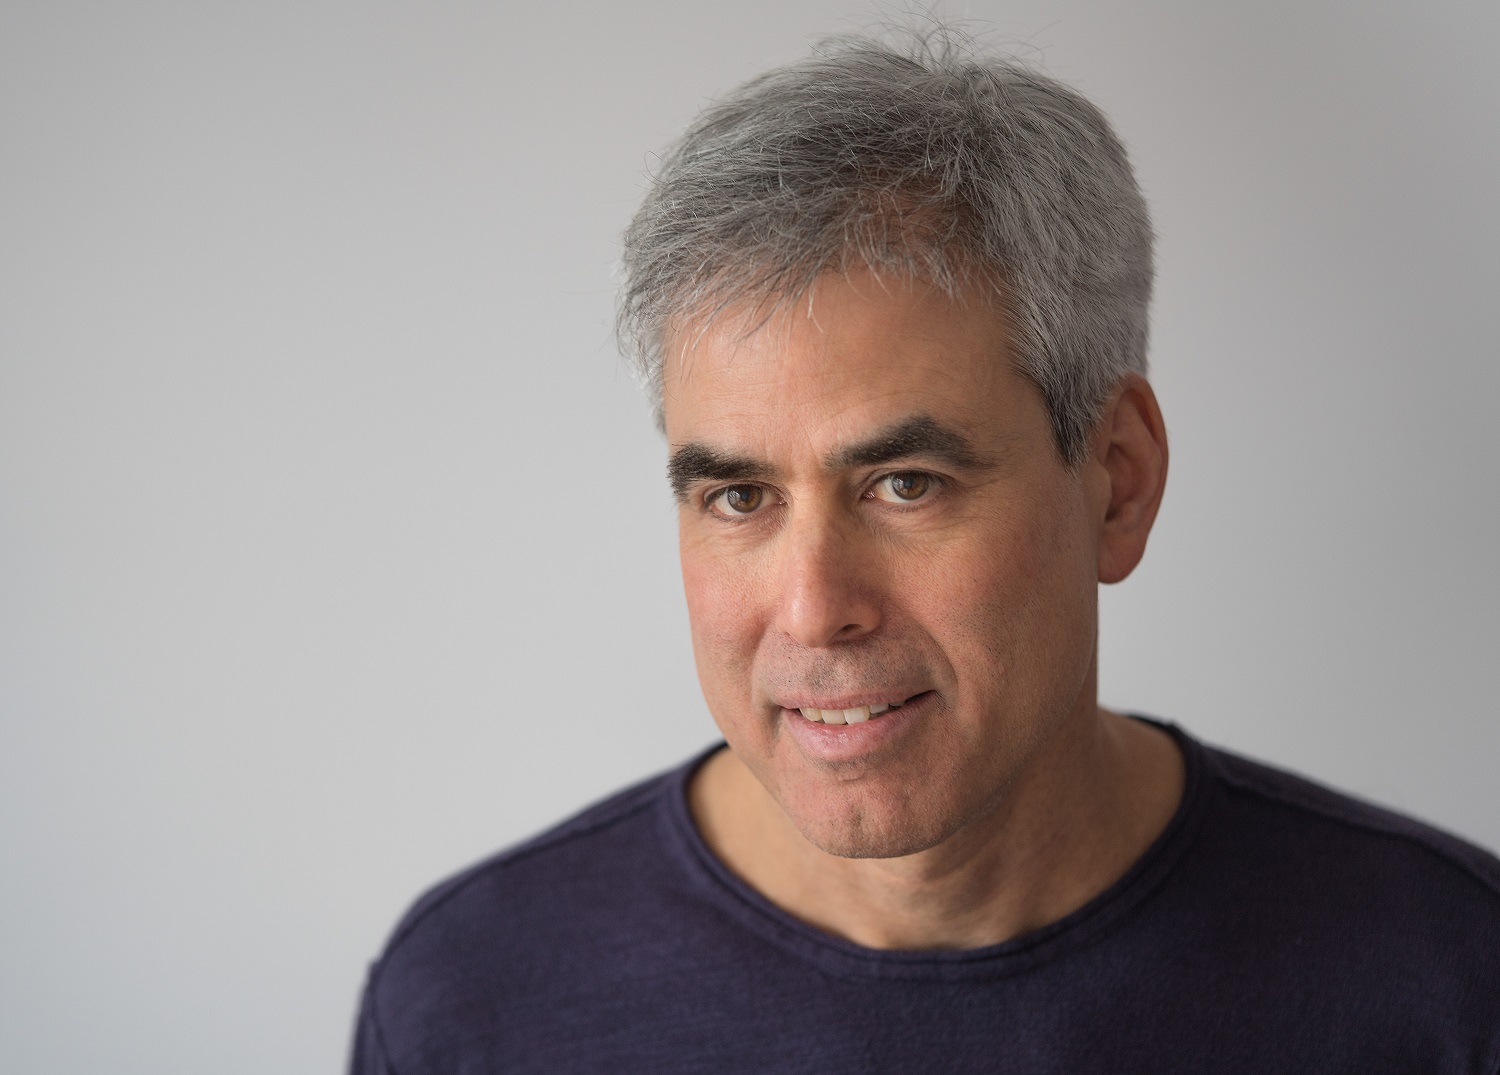 Garsus psichologas J. Haidtas knygoje paaiškina, kodėl žmonės nesutaria, ir nurodo kelius į tarpusavio supratimą